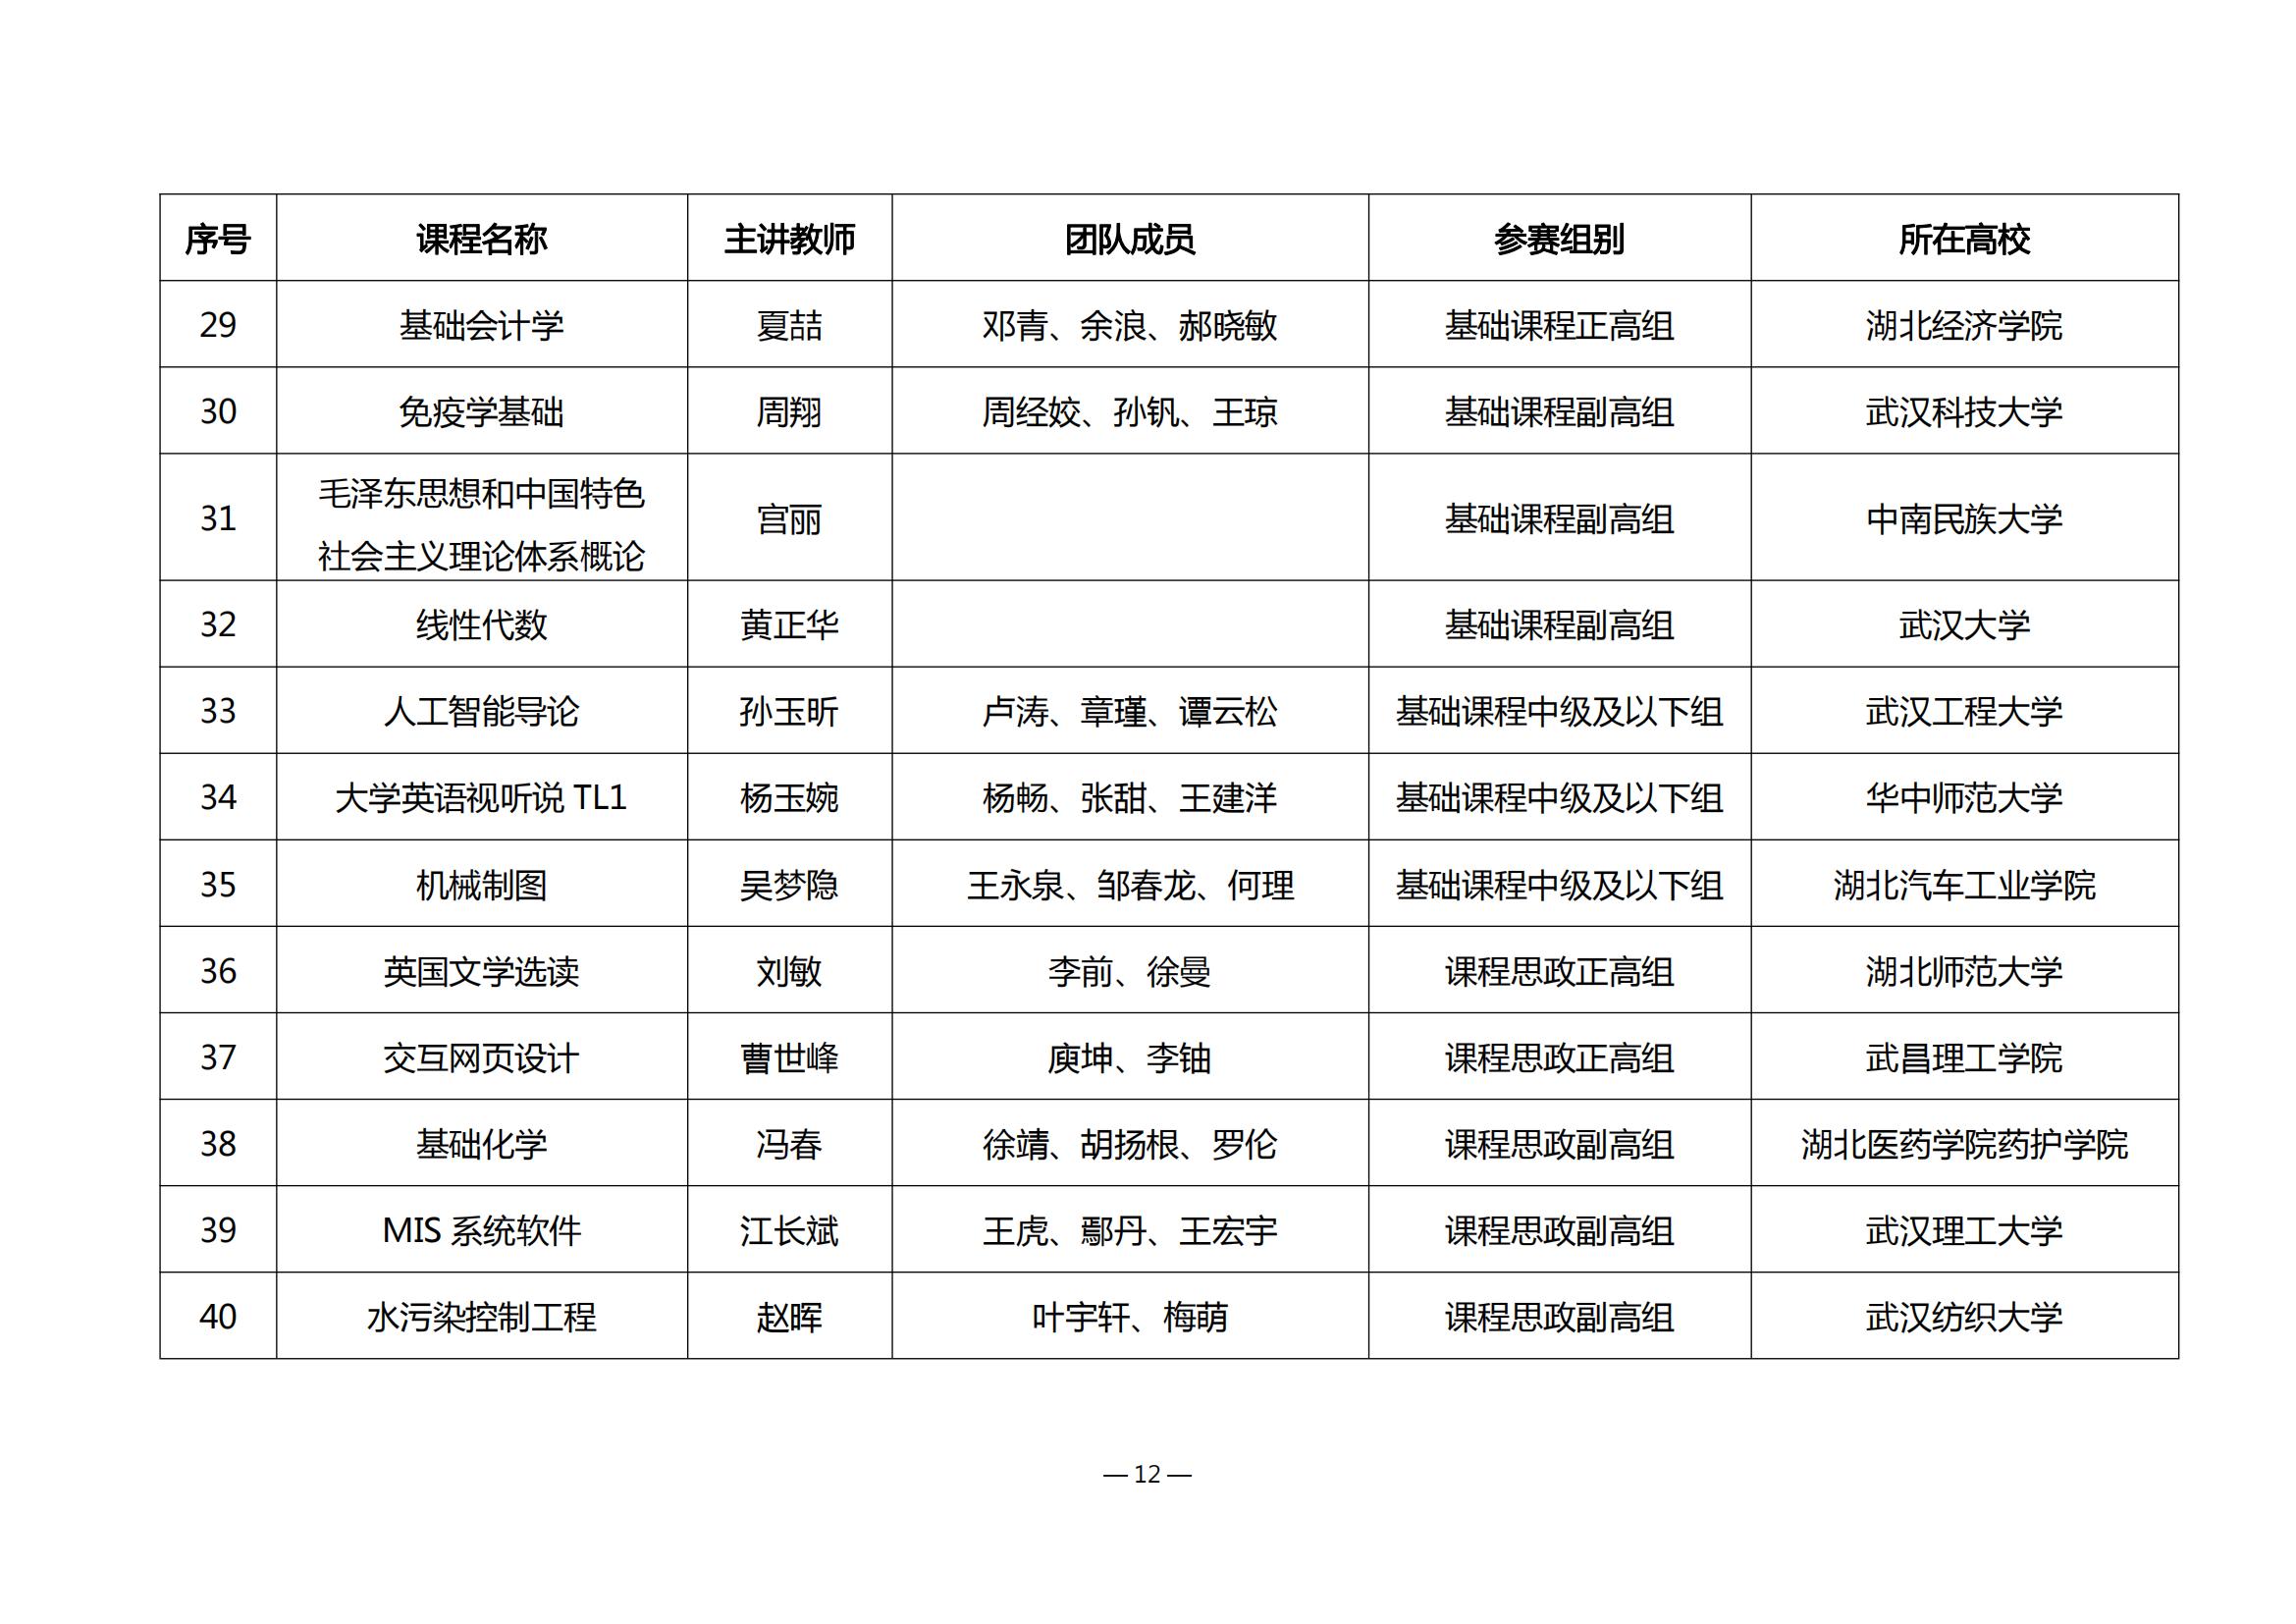 第四届湖北省高校教师教学创新大赛评审结果公示_11.jpg